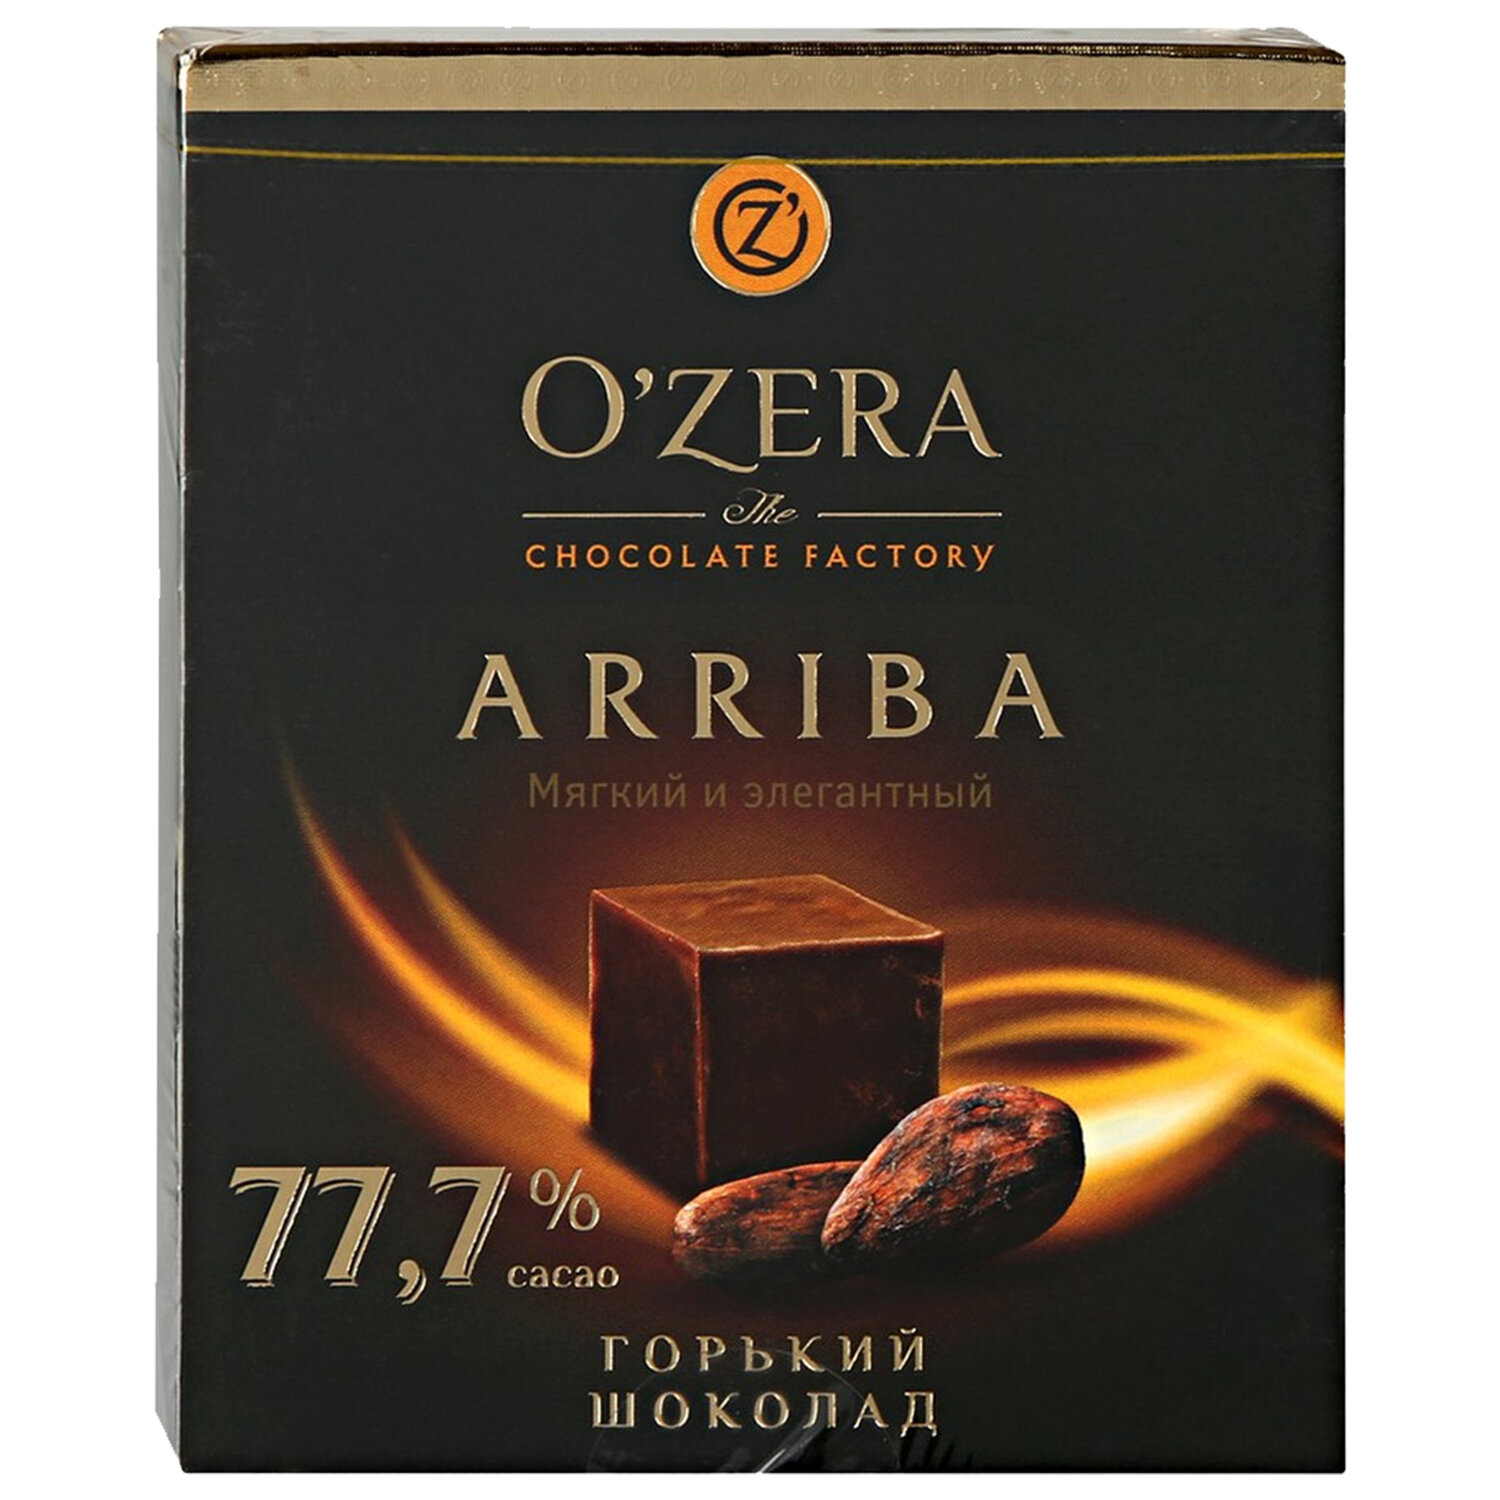 Горький шоколад купить в москве. Шоколад, o`Zera arriba, 77.7%, 90г. O'Zera Горький шоколад 77.7. Шоколад Ozera arriba 77,7%. Шоколад «o'Zera» arriba Горький, 90 г.